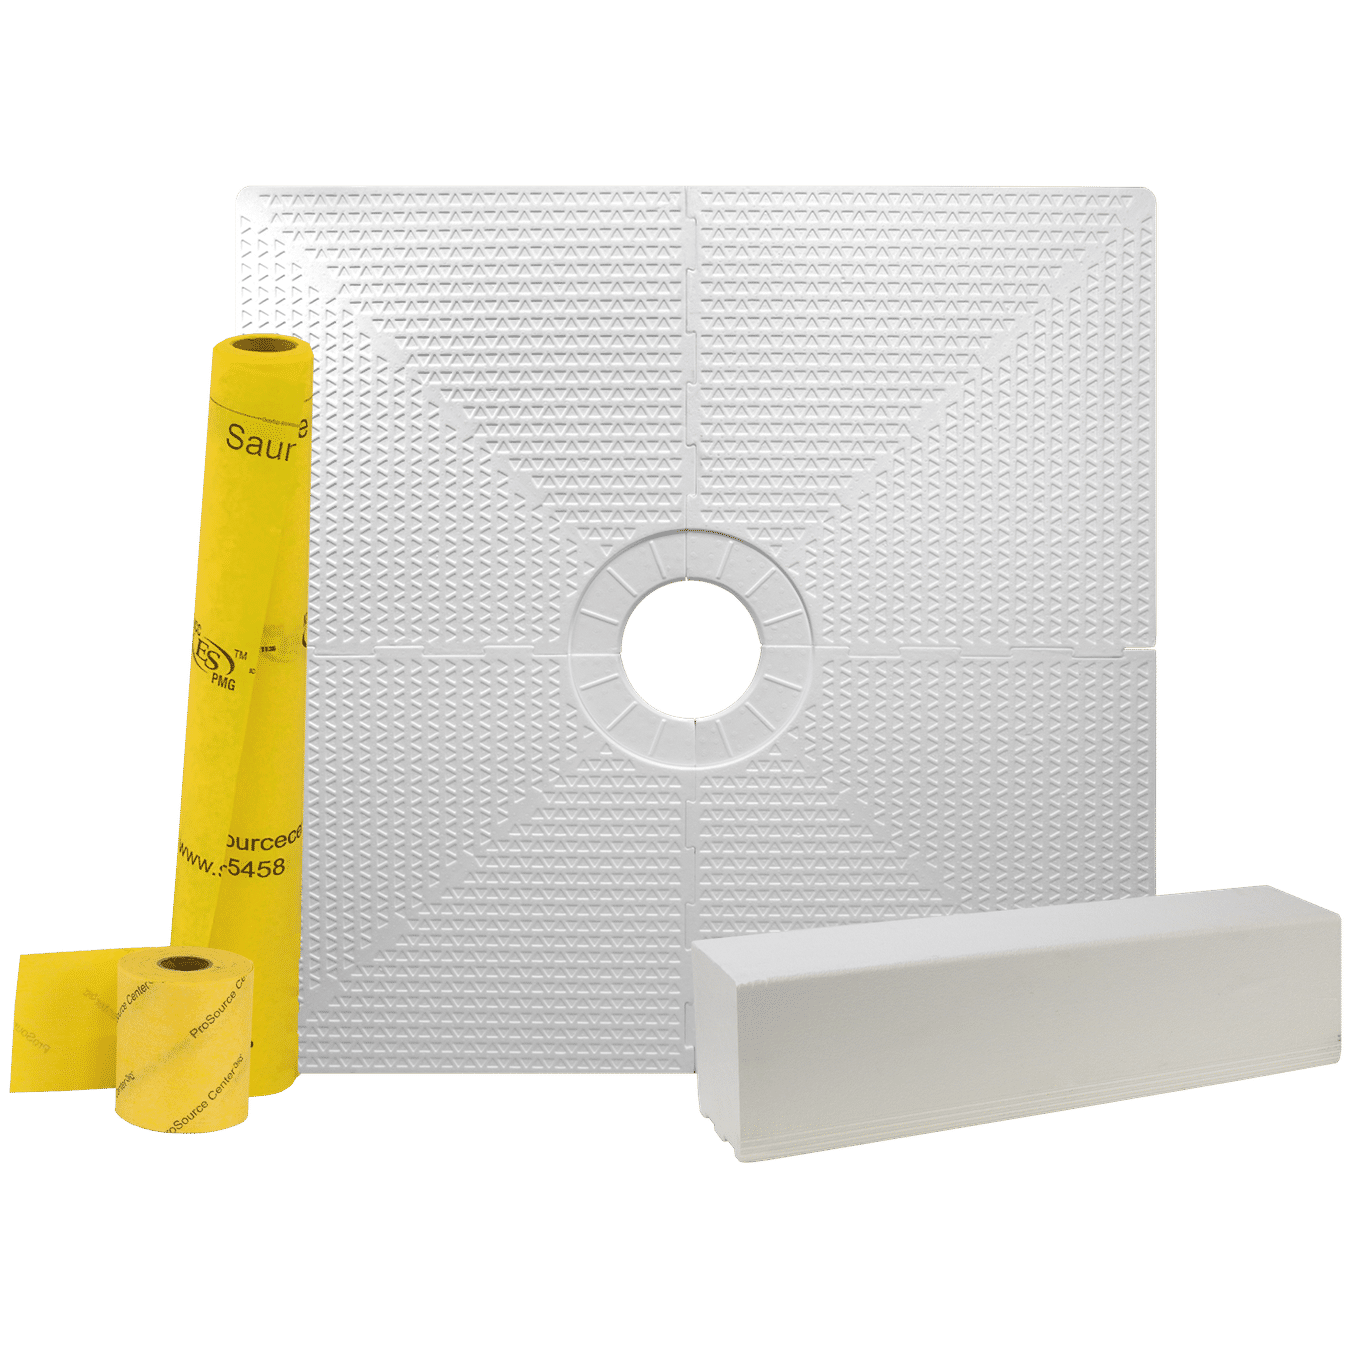 Pro GEN II 48” x 48” Tile Waterproofing Shower Pan Kit with Center Drain Hole